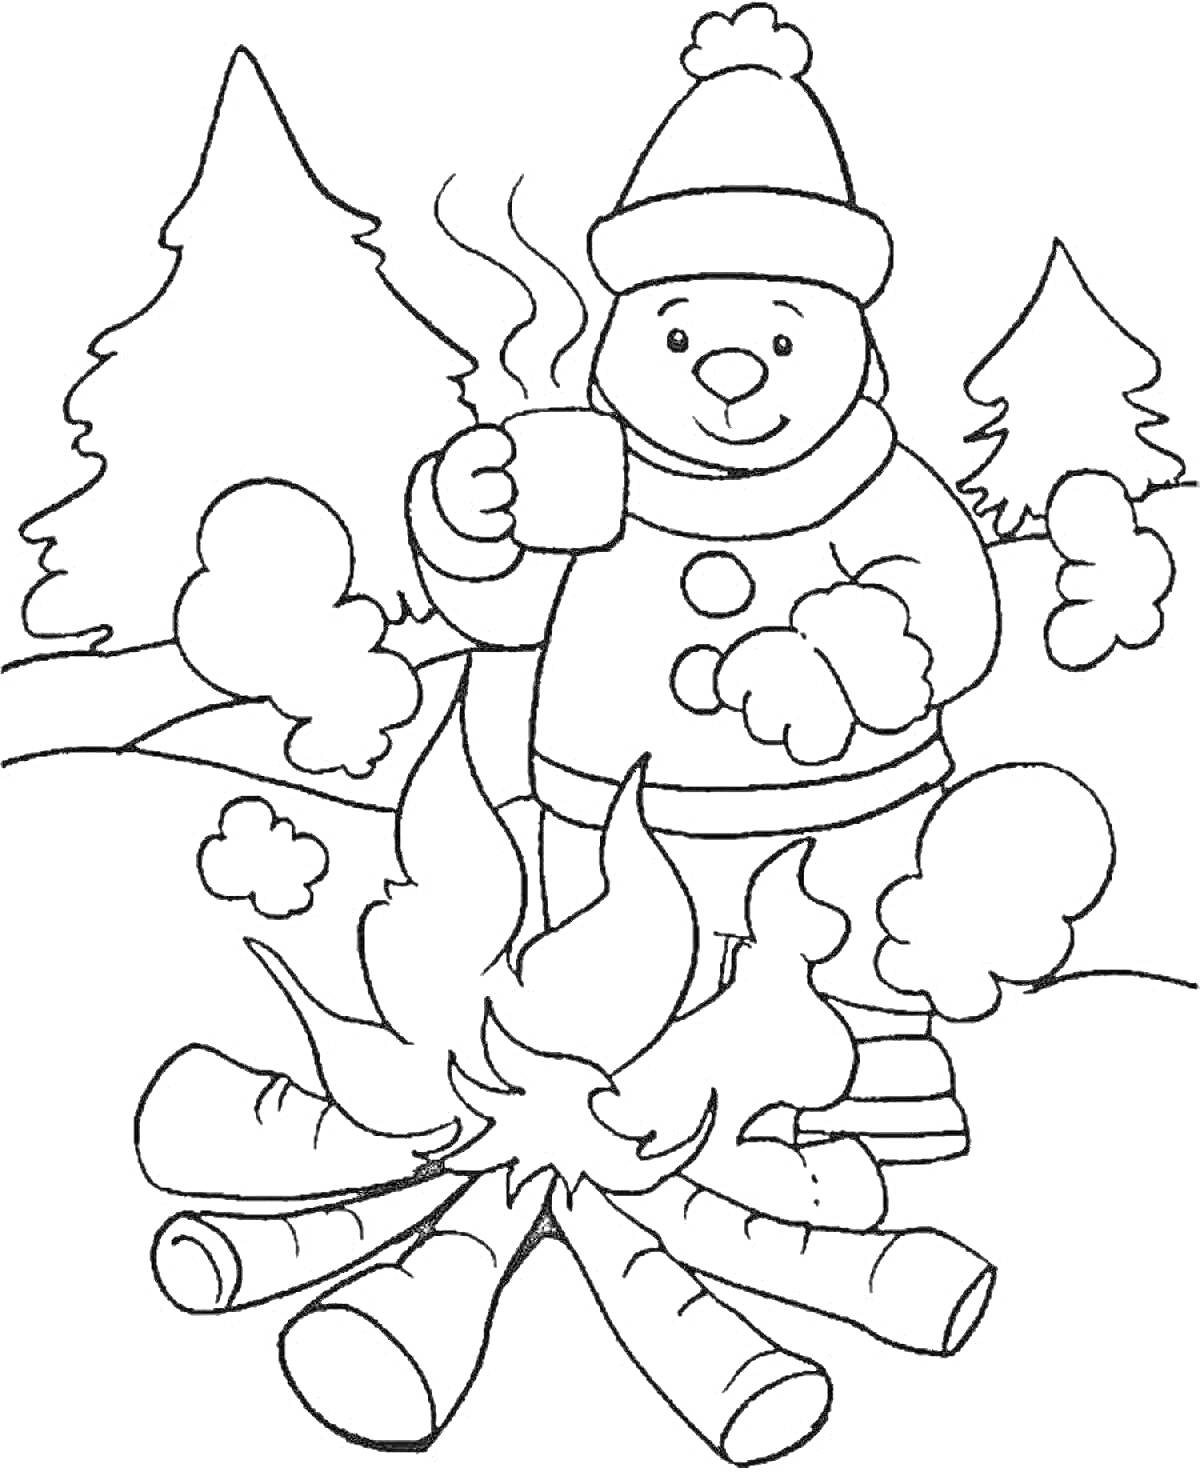 Раскраска Ребенок в зимней одежде пьет горячий напиток у костра на фоне леса